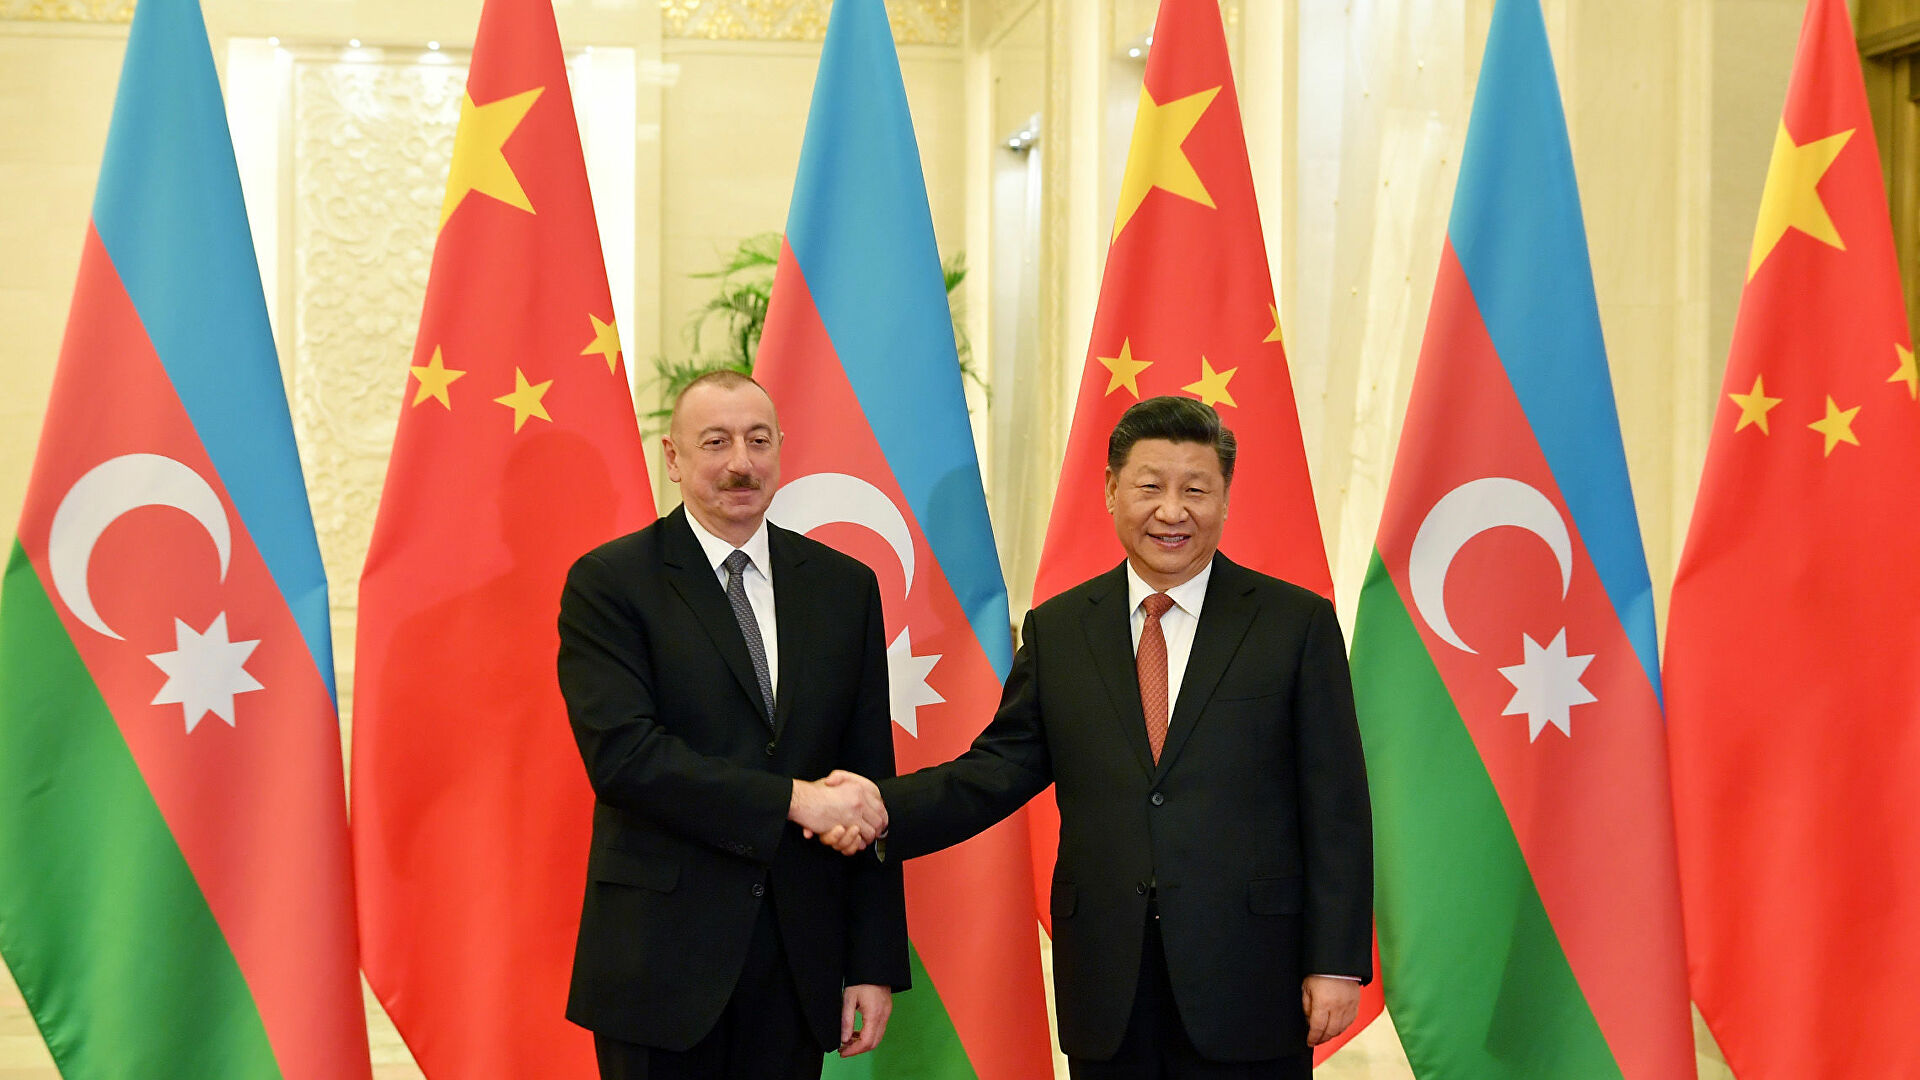 Азербайджан-Китай: 30 лет сотрудничества, которое может стать примером для всего мира